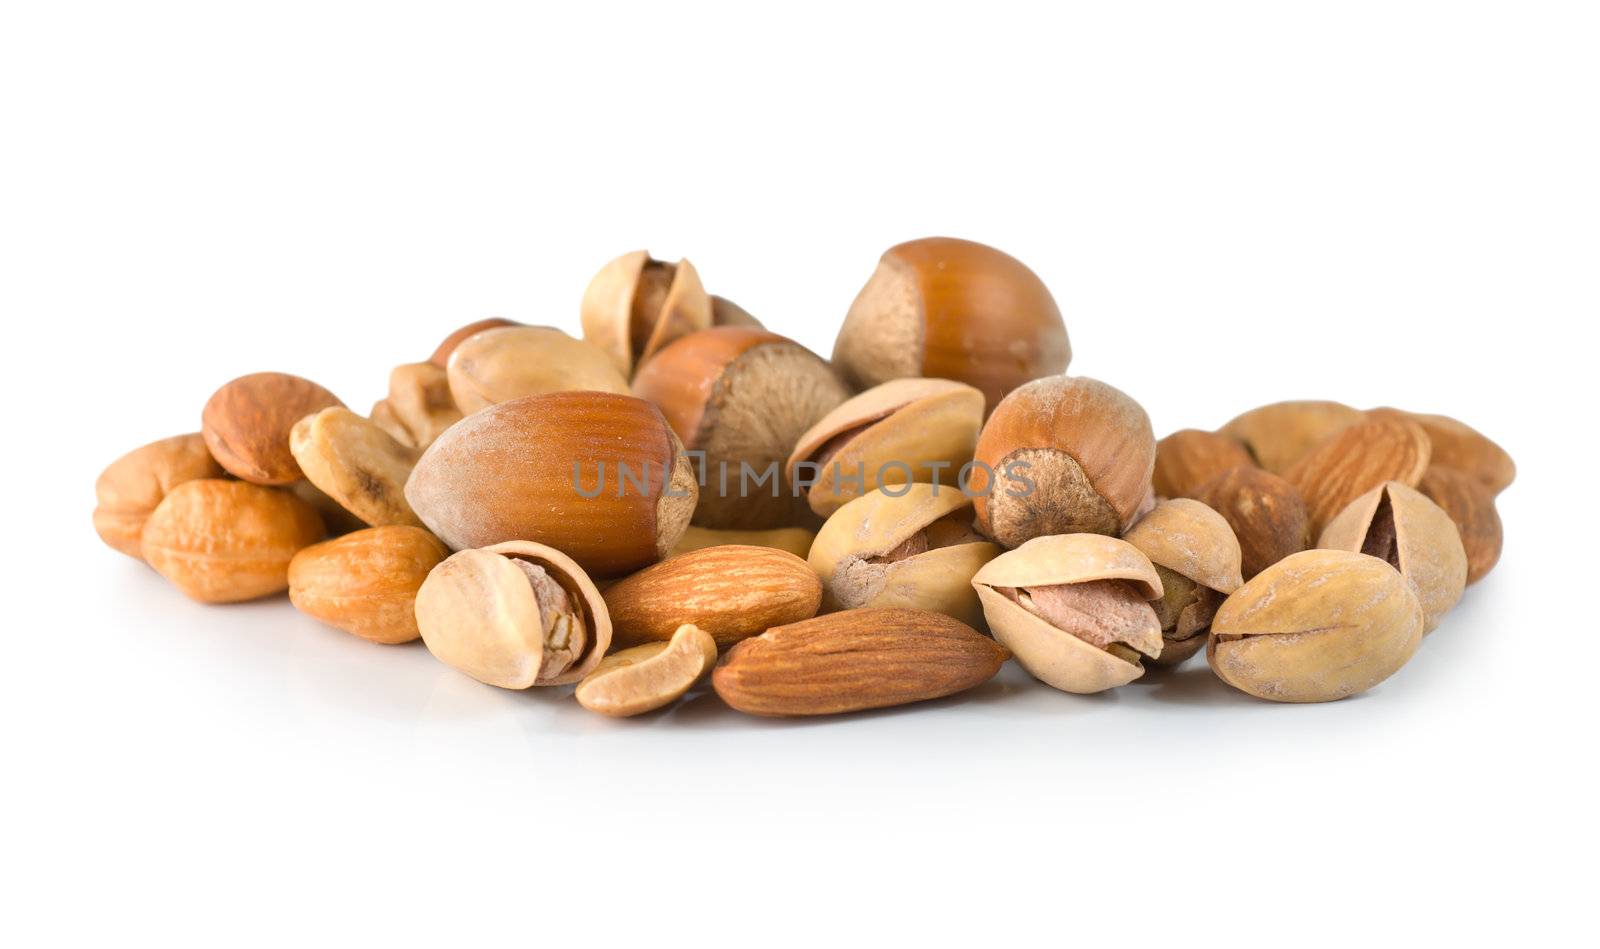 Cashews, hazelnuts, pistachios isolated on white background